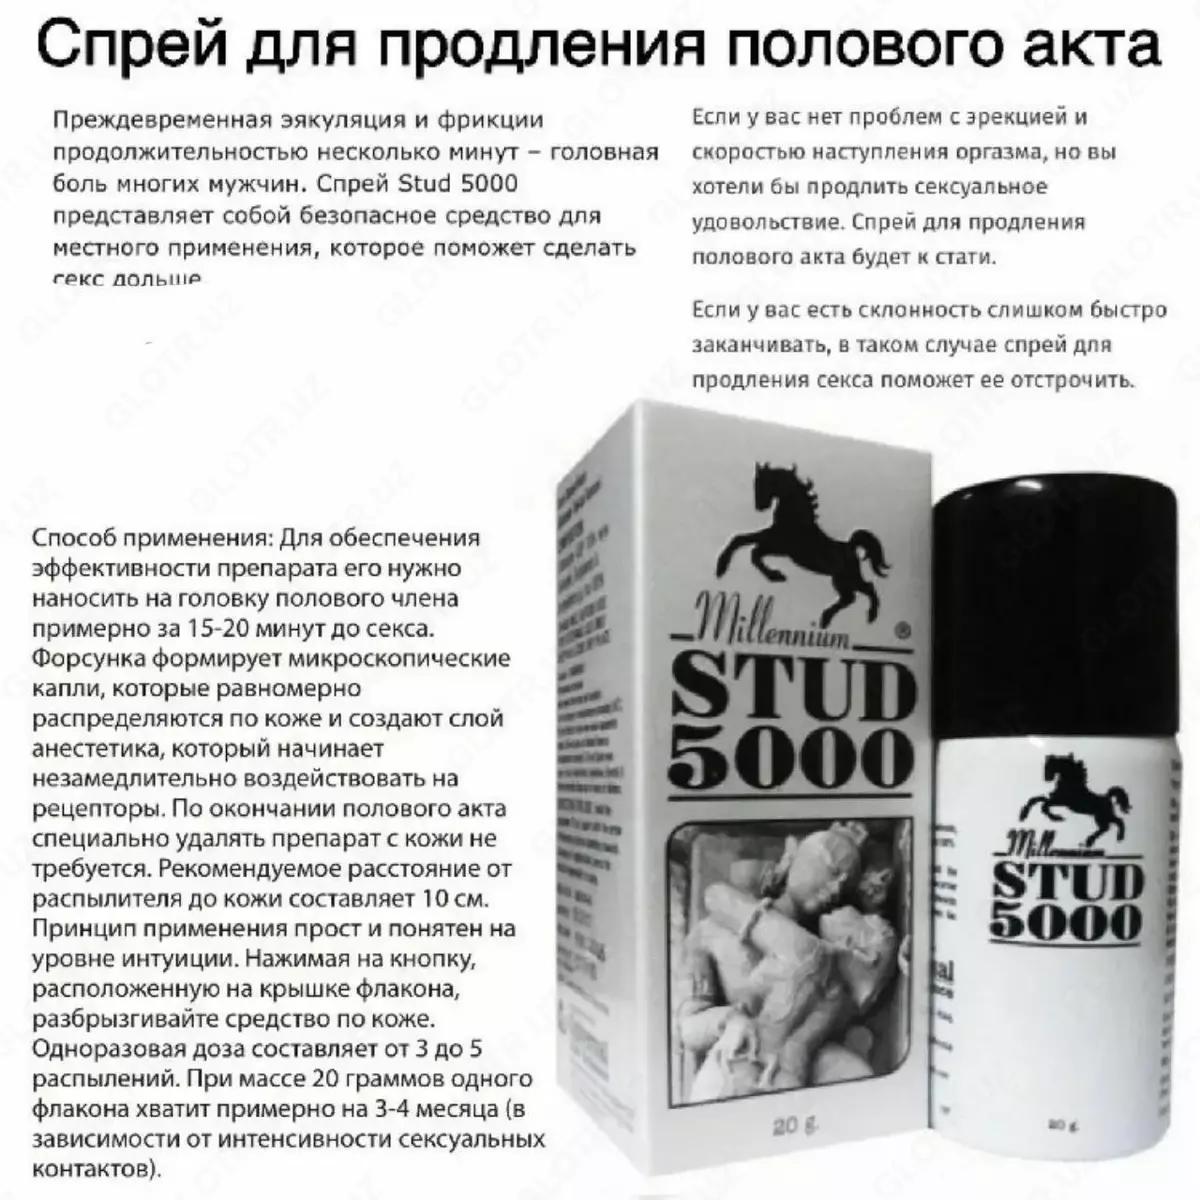 Спрей для продления полового акта Stud-5000, цена 110 000 сум от Parkenskiy113, купить в Ташкенте, Узбекистан - фото и отзывы на Glotr.uz